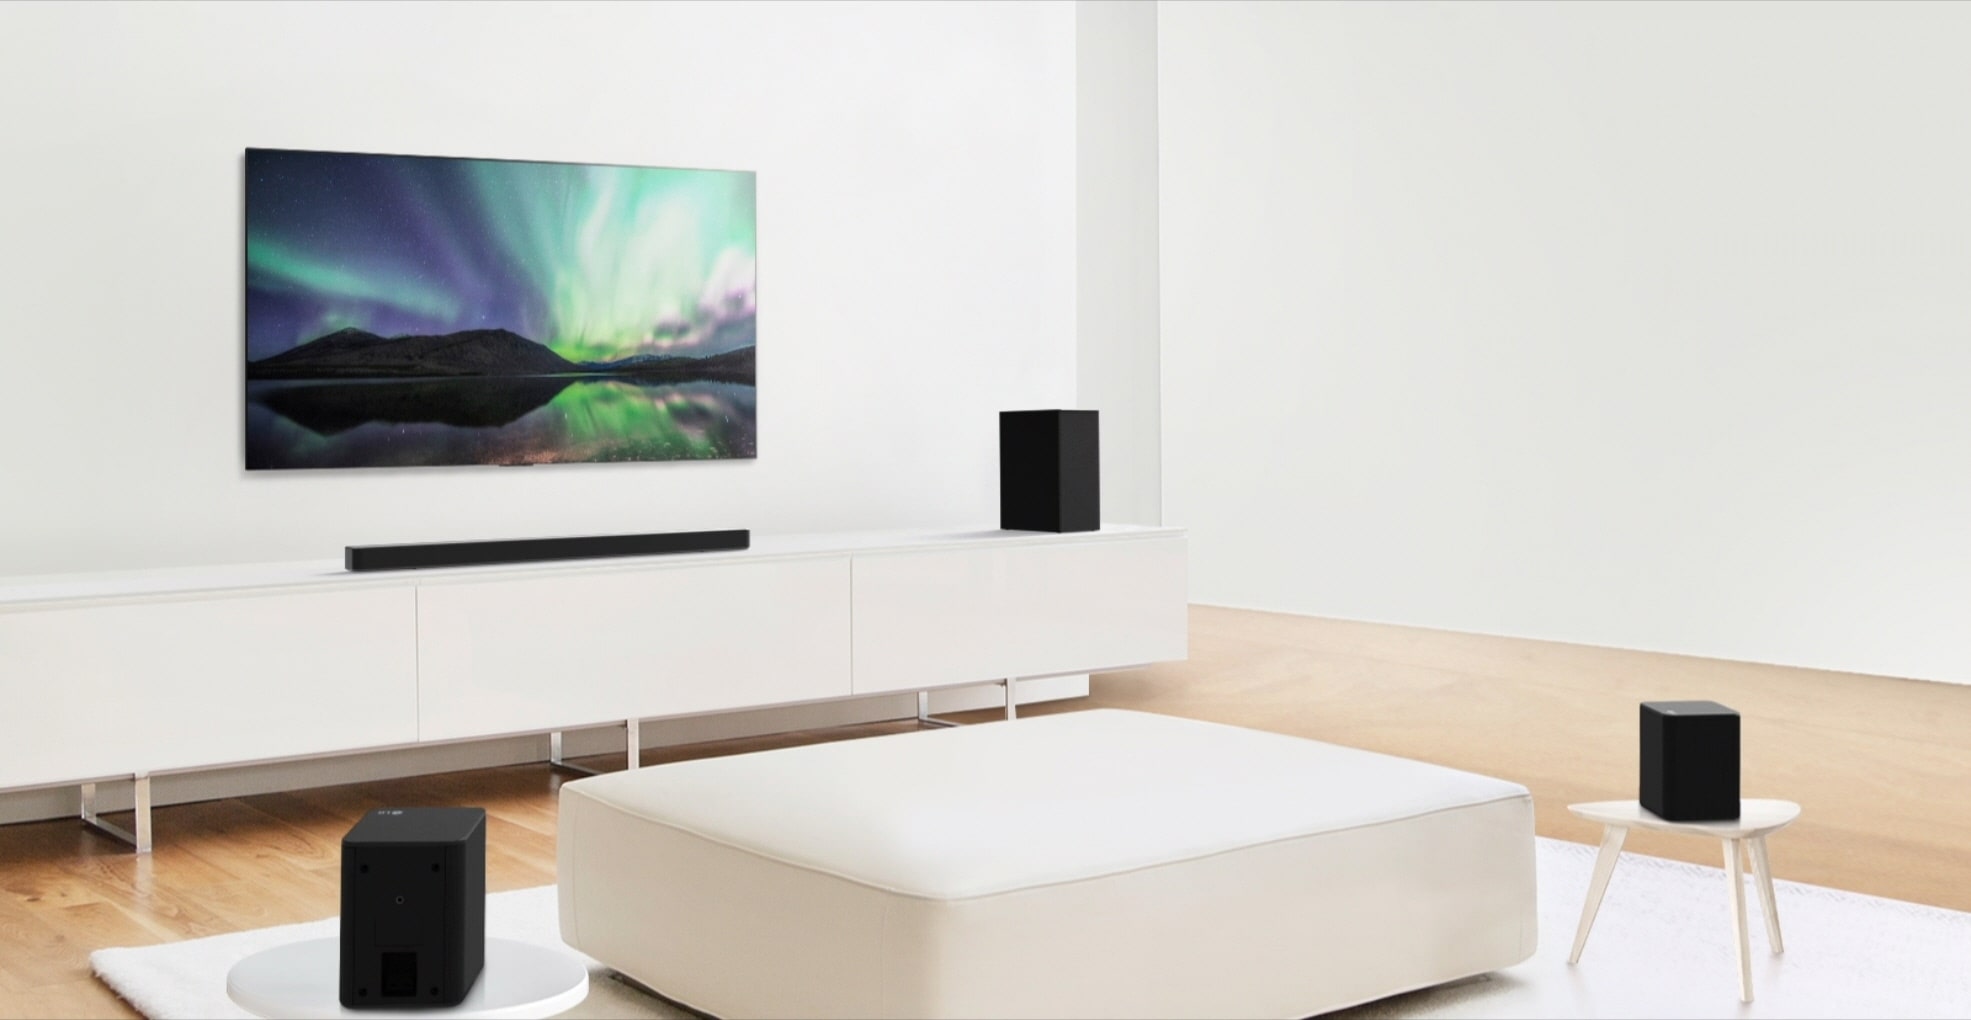 Previsualización de video mostrando la Barra de Sonido LG en una sala blanca con una configuración de 5.1 canales.